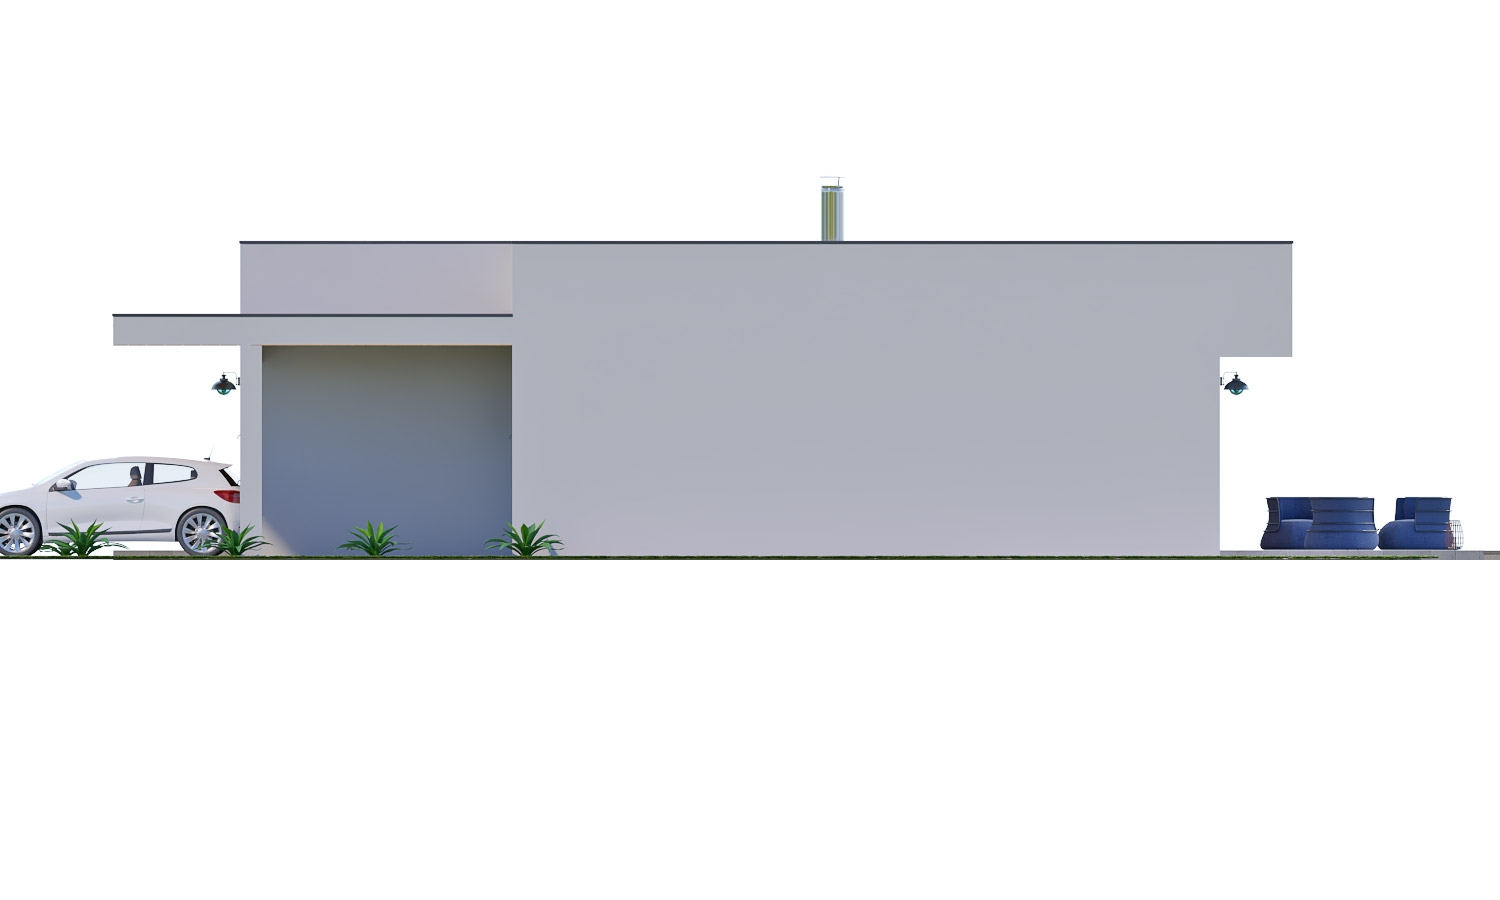 Zrkadlový pohľad 2. - Moderní 4-pokojový zděný rodinný dům s plochou střechou. Možnost realizace s valbovou nebo sedlovou střechou.